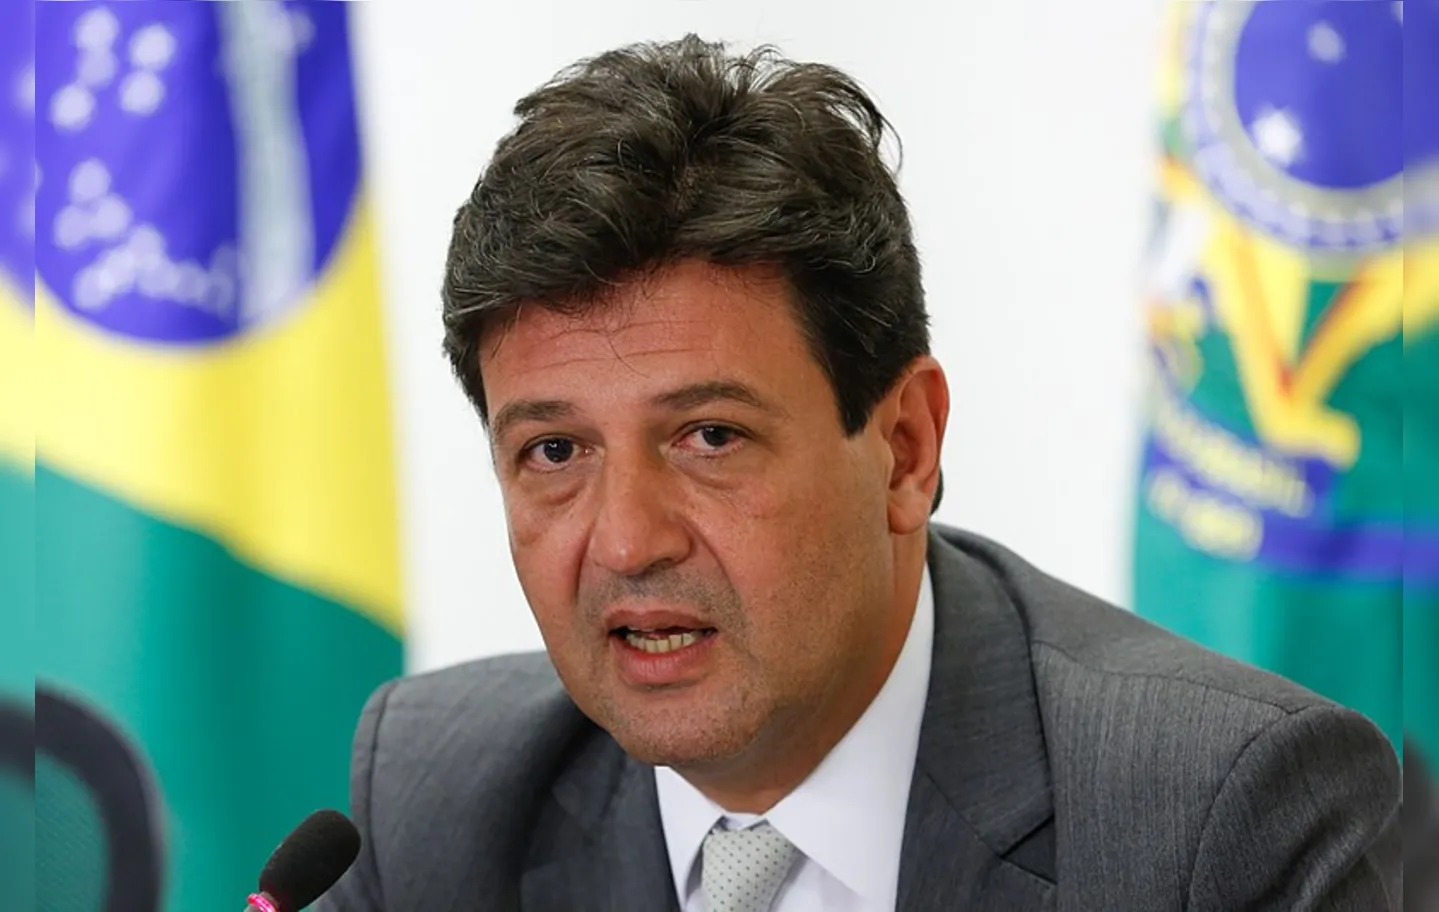 "Mais postos de saúde, menos postos Ipiranga", disparou o primeiro ministro da Saúde do governo Bolsonaro sobre o ex-colega